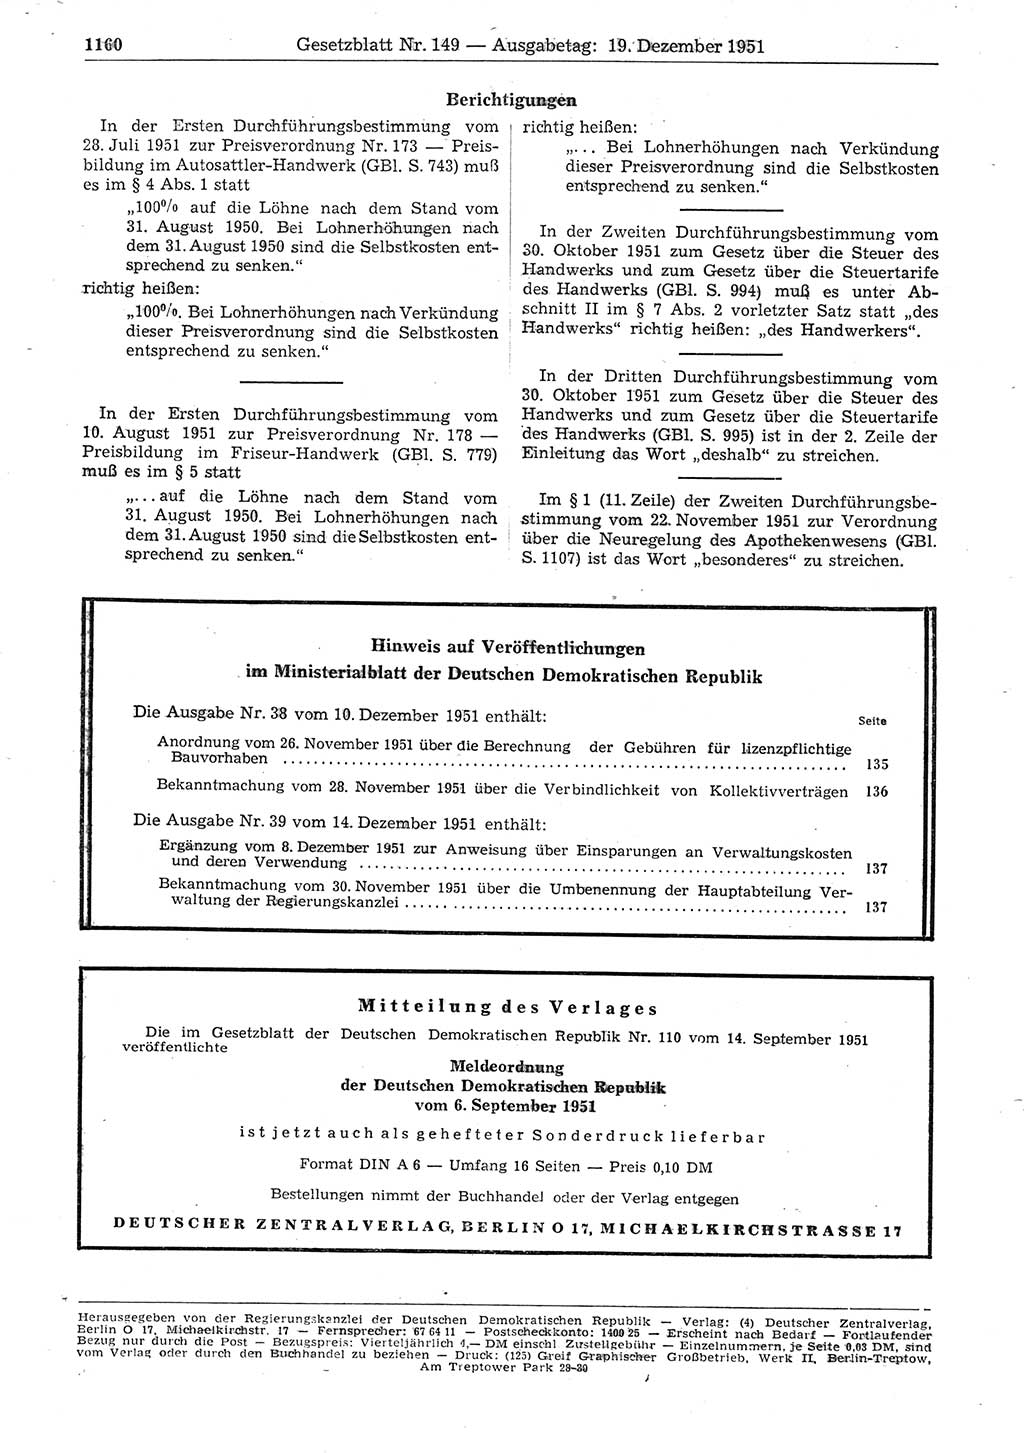 Gesetzblatt (GBl.) der Deutschen Demokratischen Republik (DDR) 1951, Seite 1160 (GBl. DDR 1951, S. 1160)